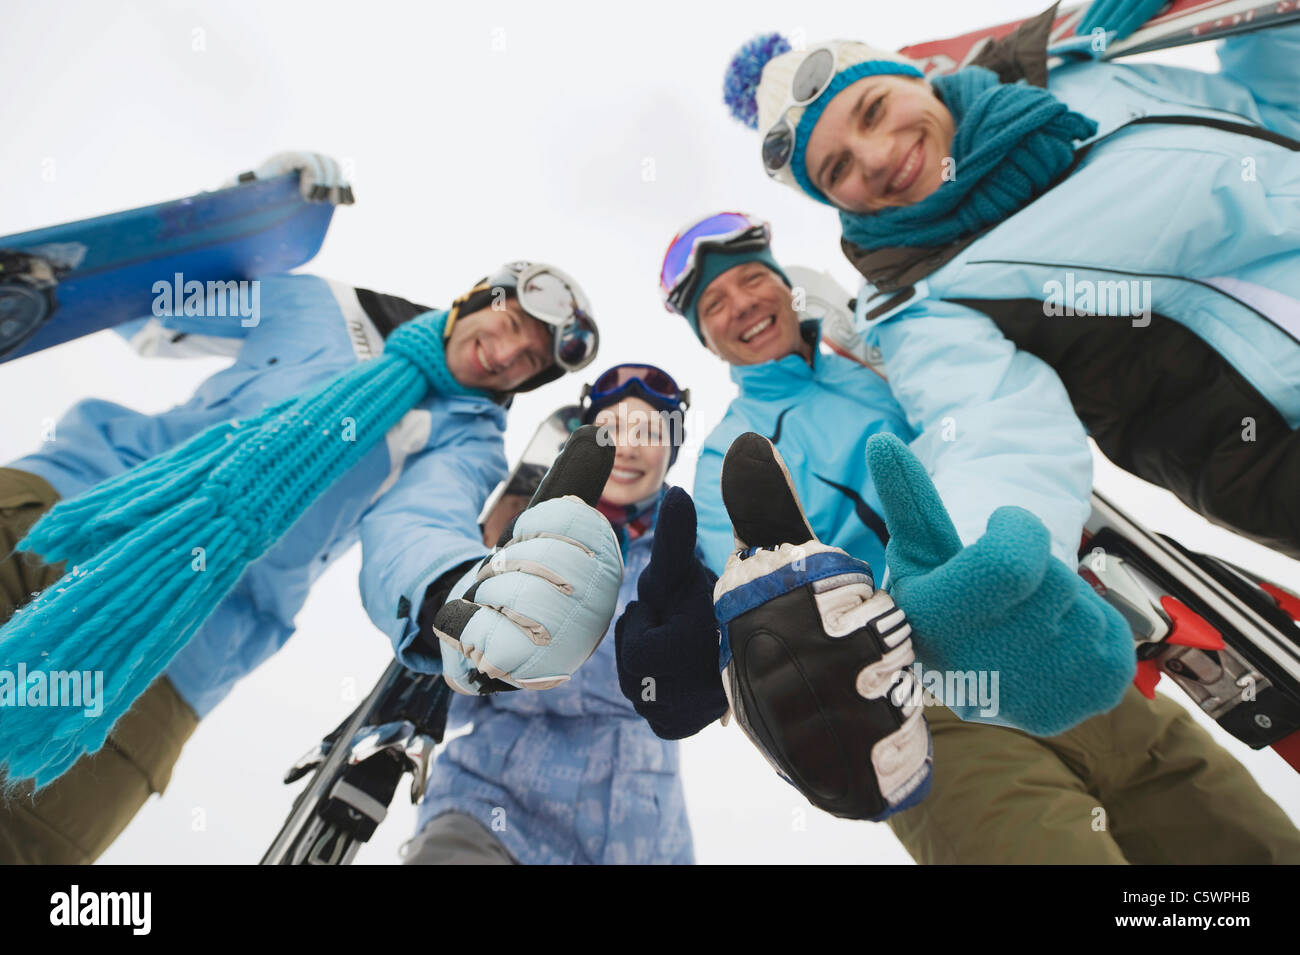 L'Italie, le Tyrol du Sud, quatre personnes dans des vêtements d'hiver, Thumbs up, low angle view Banque D'Images